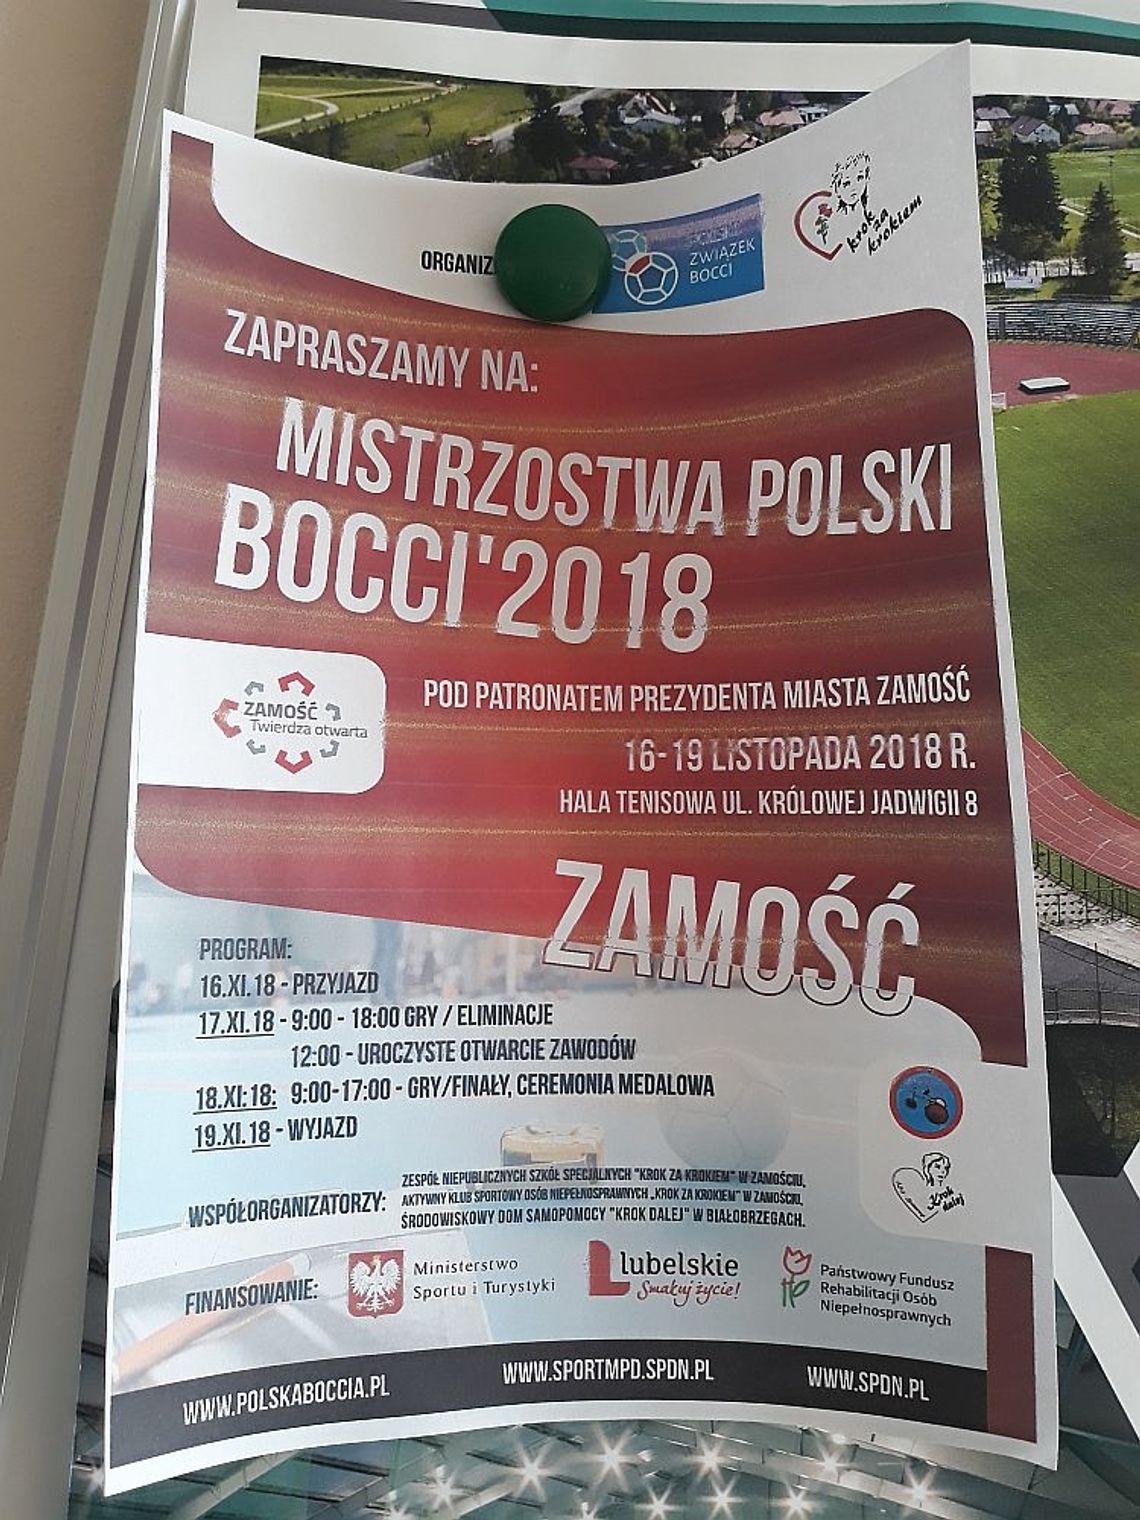 Mistrzostwa Polski Boccia 2018